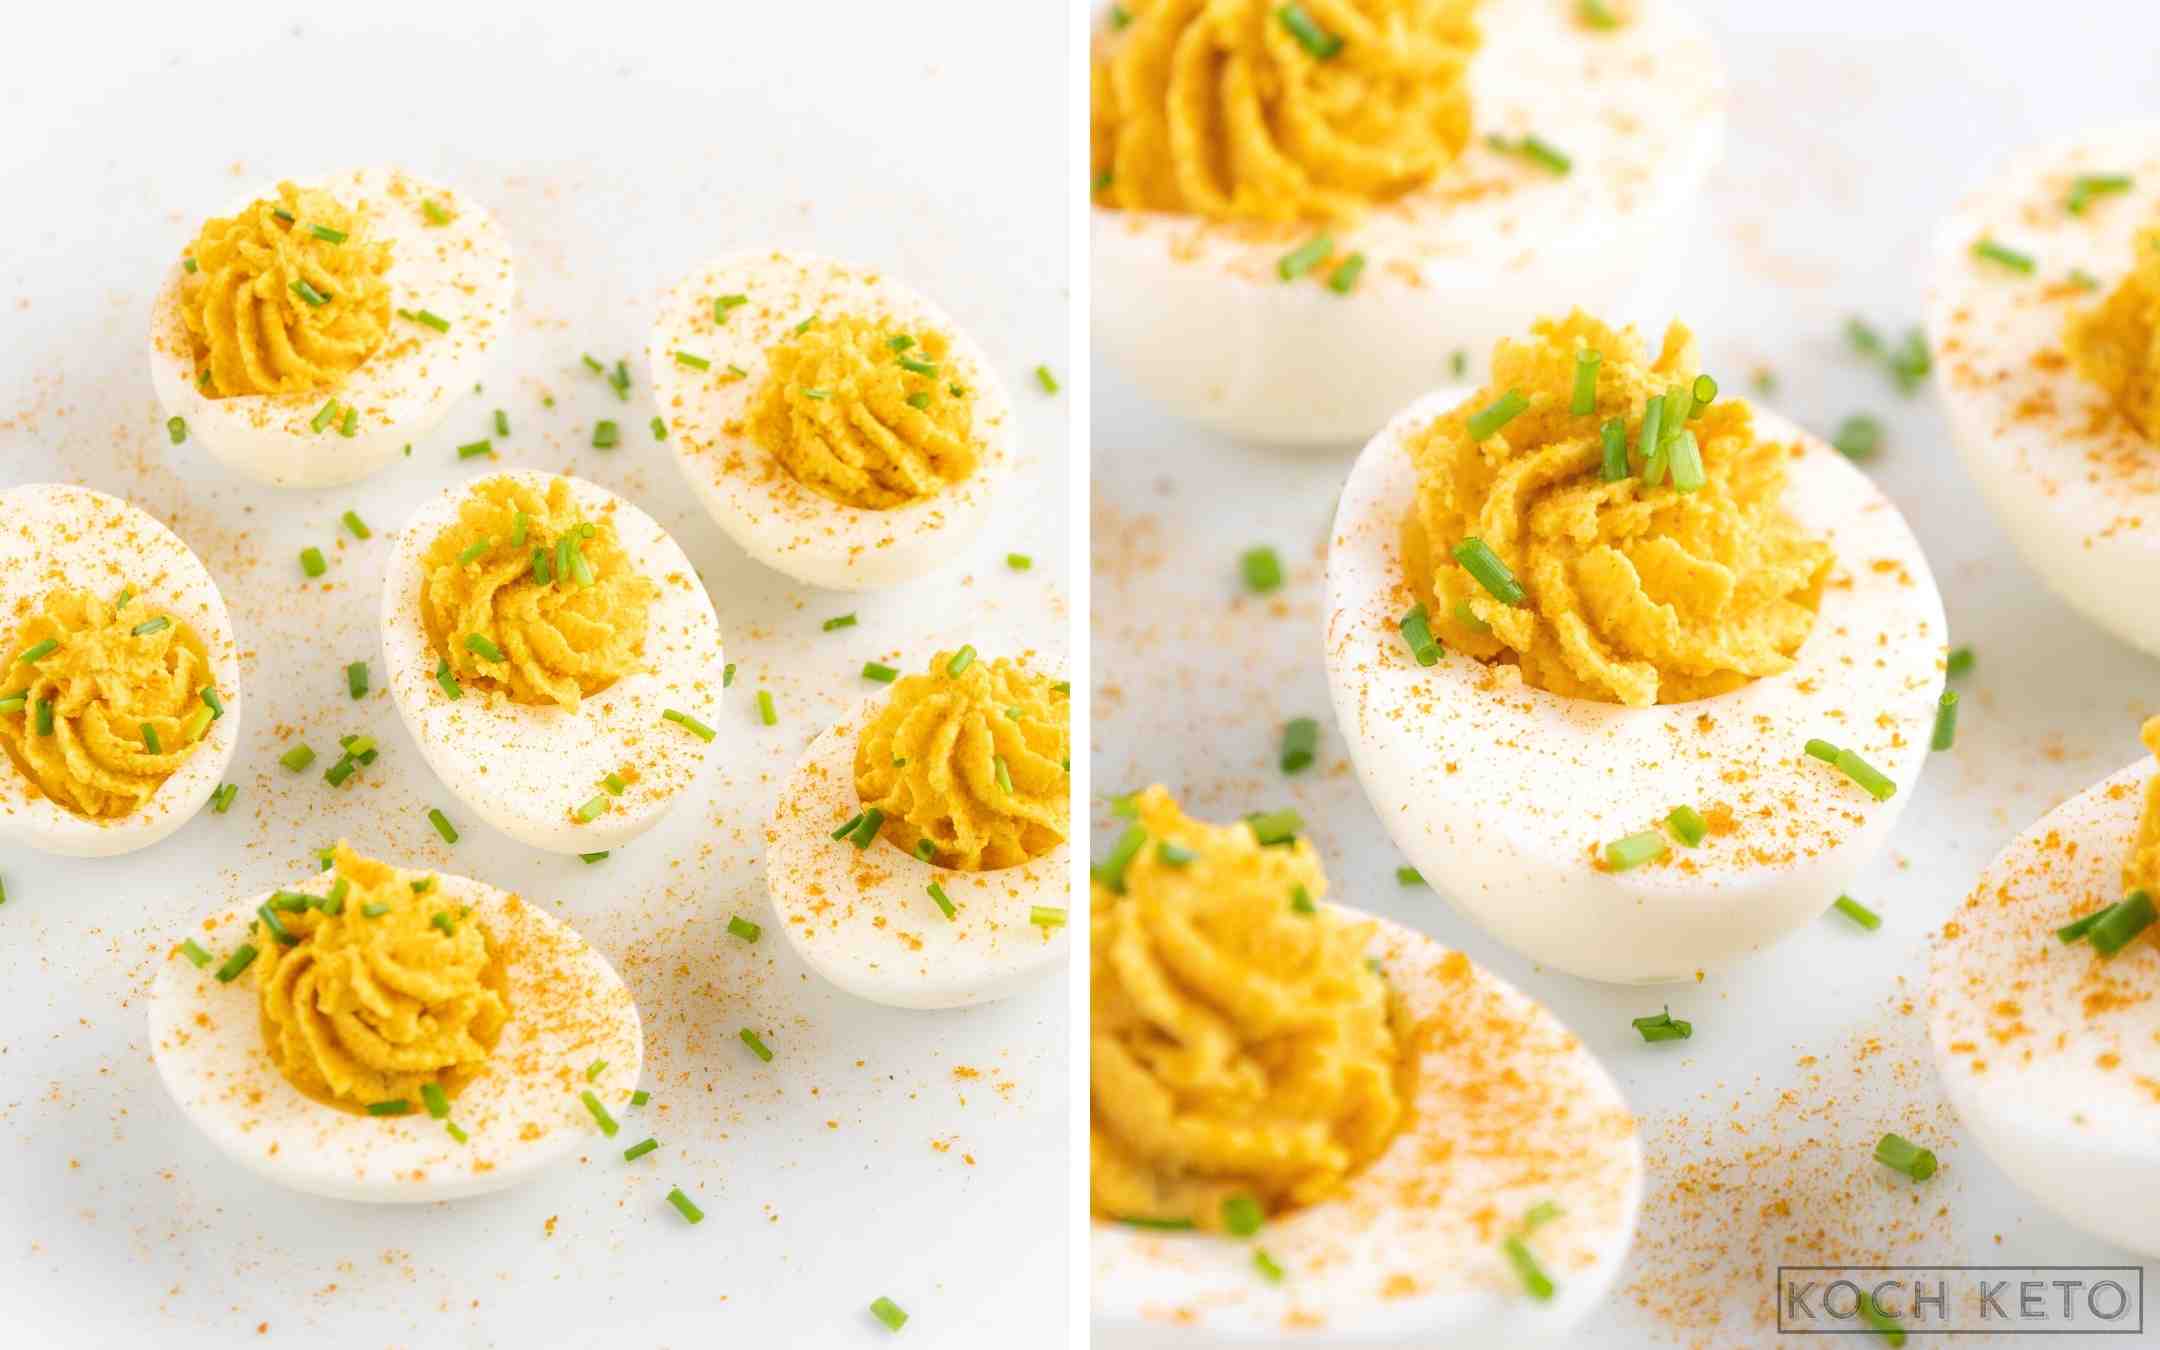 Gefüllte Curry-Eier - einfacher Keto Snack ohne Kohlenhydrate zum Abnehmen Desktop Image Collage